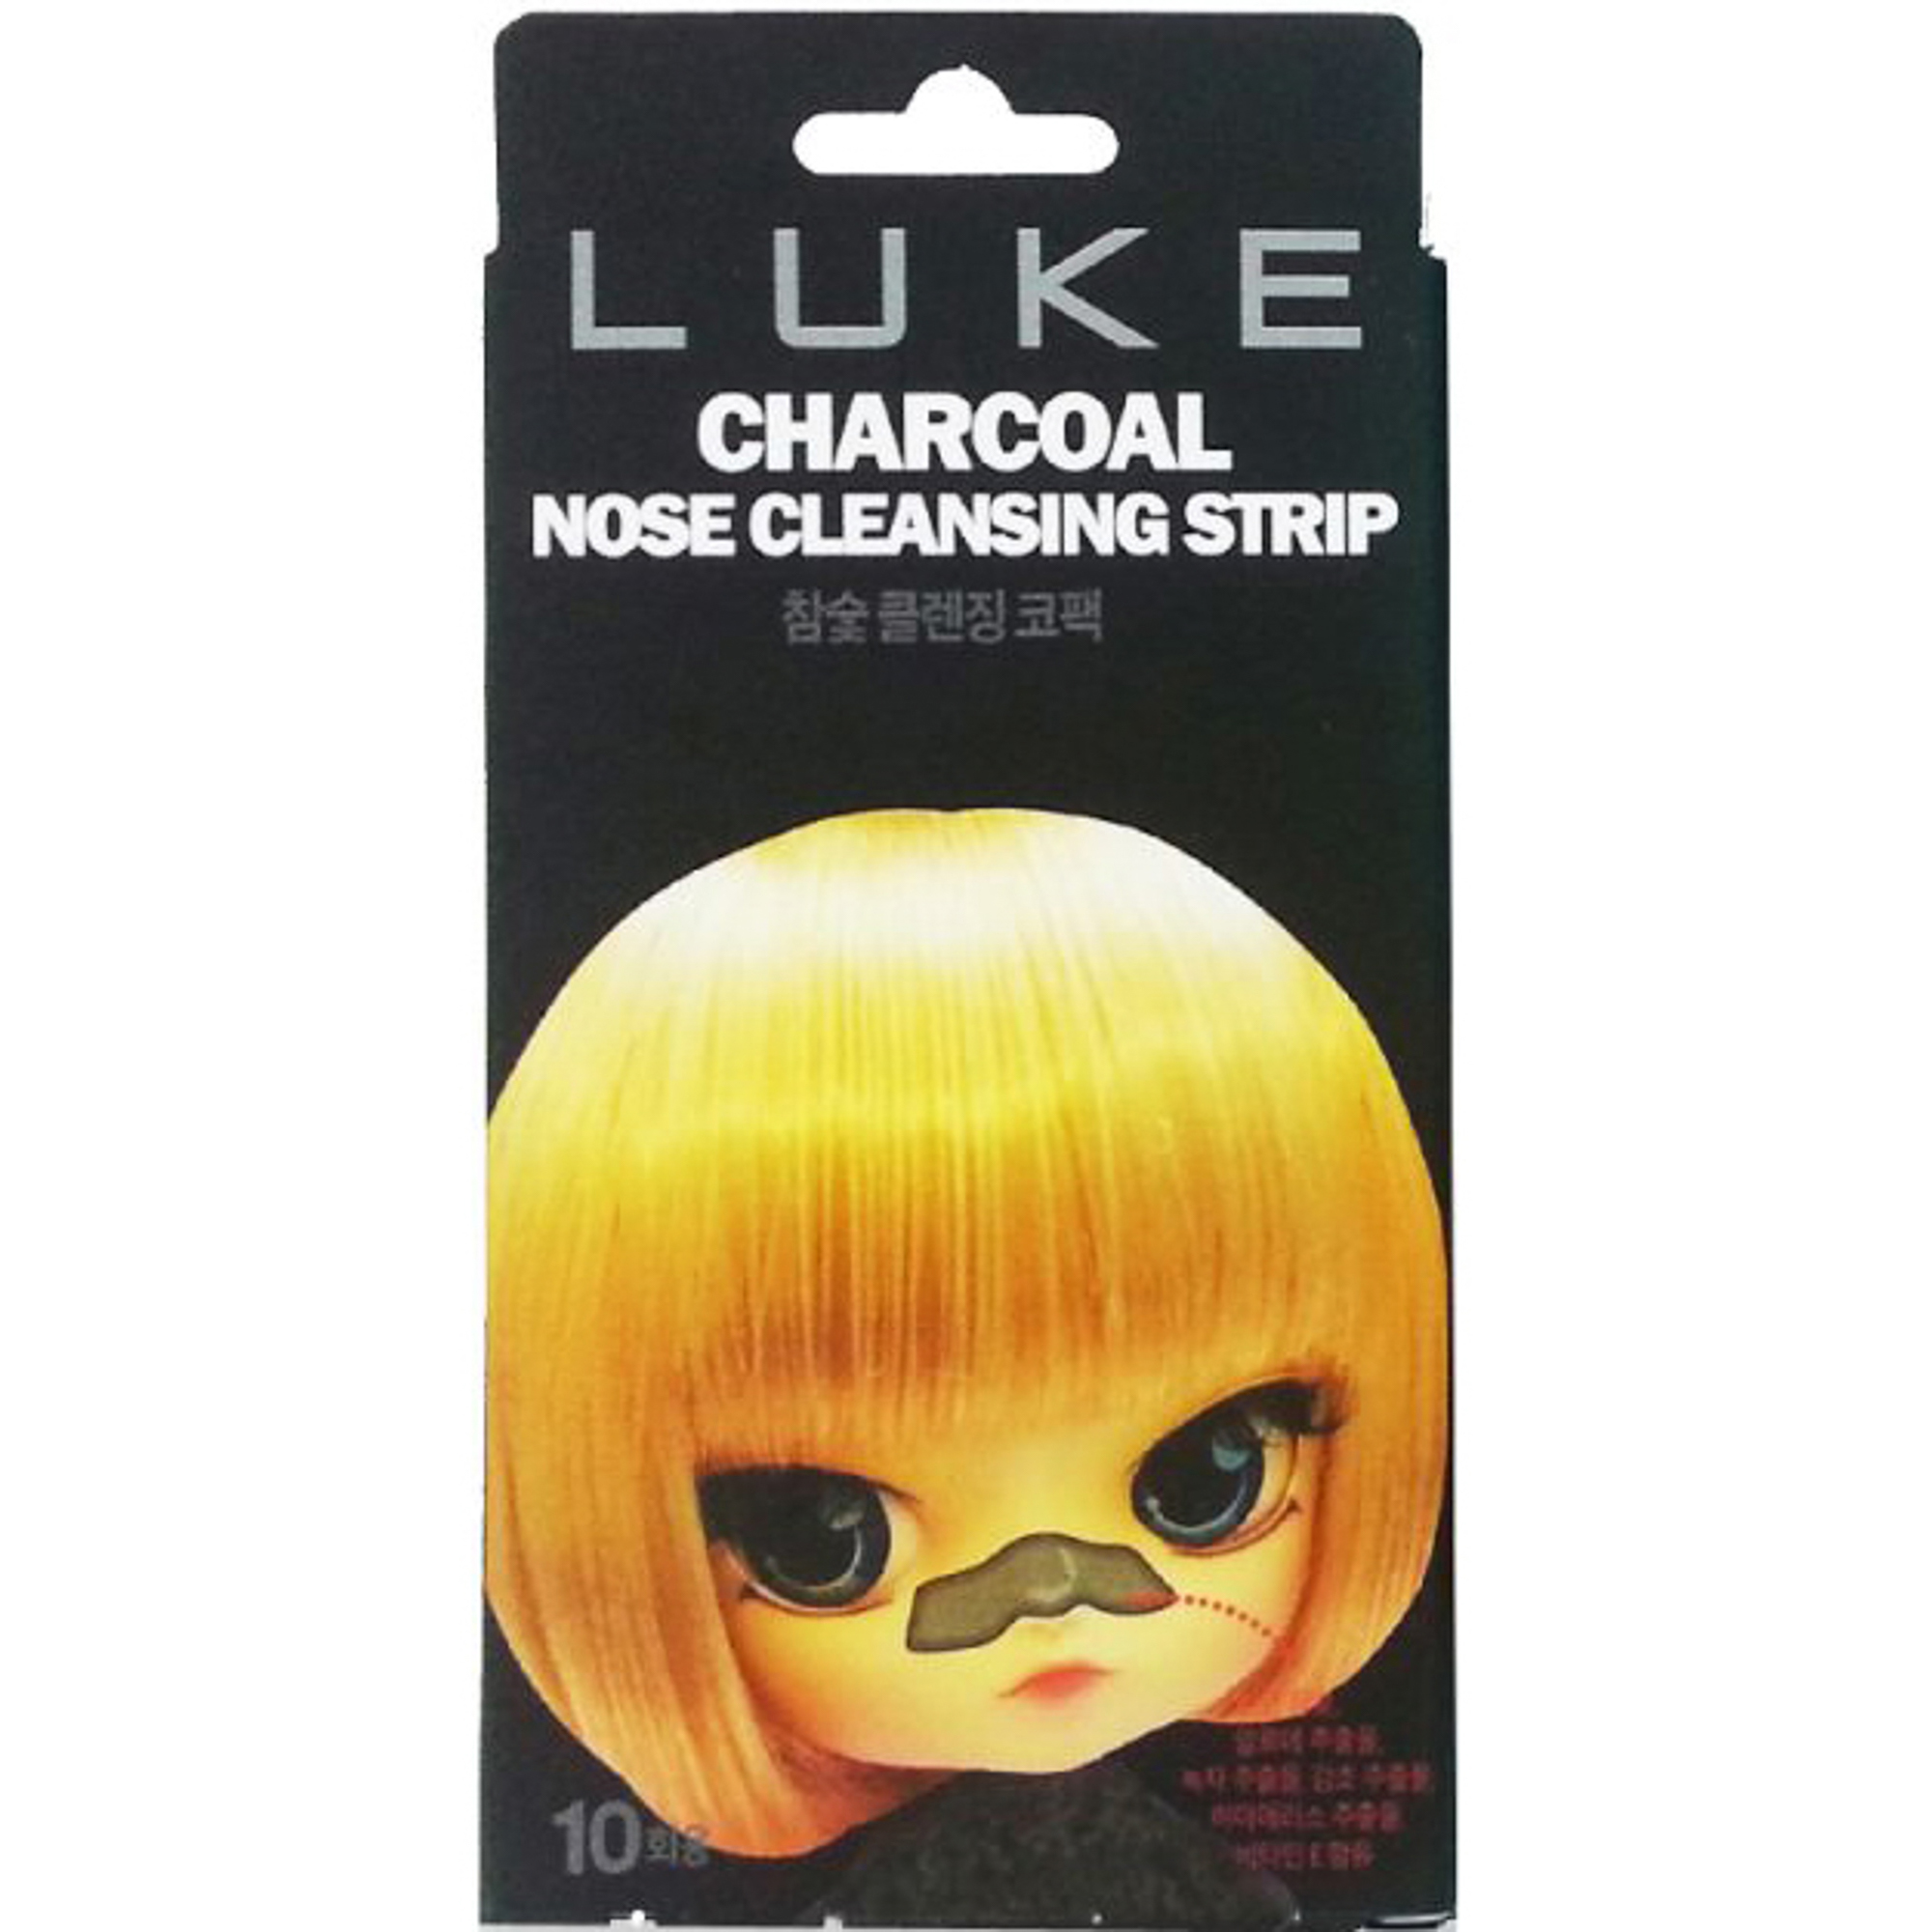 Очищающие полоски Luke Charcoal Nose Cleansing Strip 10 шт полоски для квиллинга 180 полосок плотность 120 гр